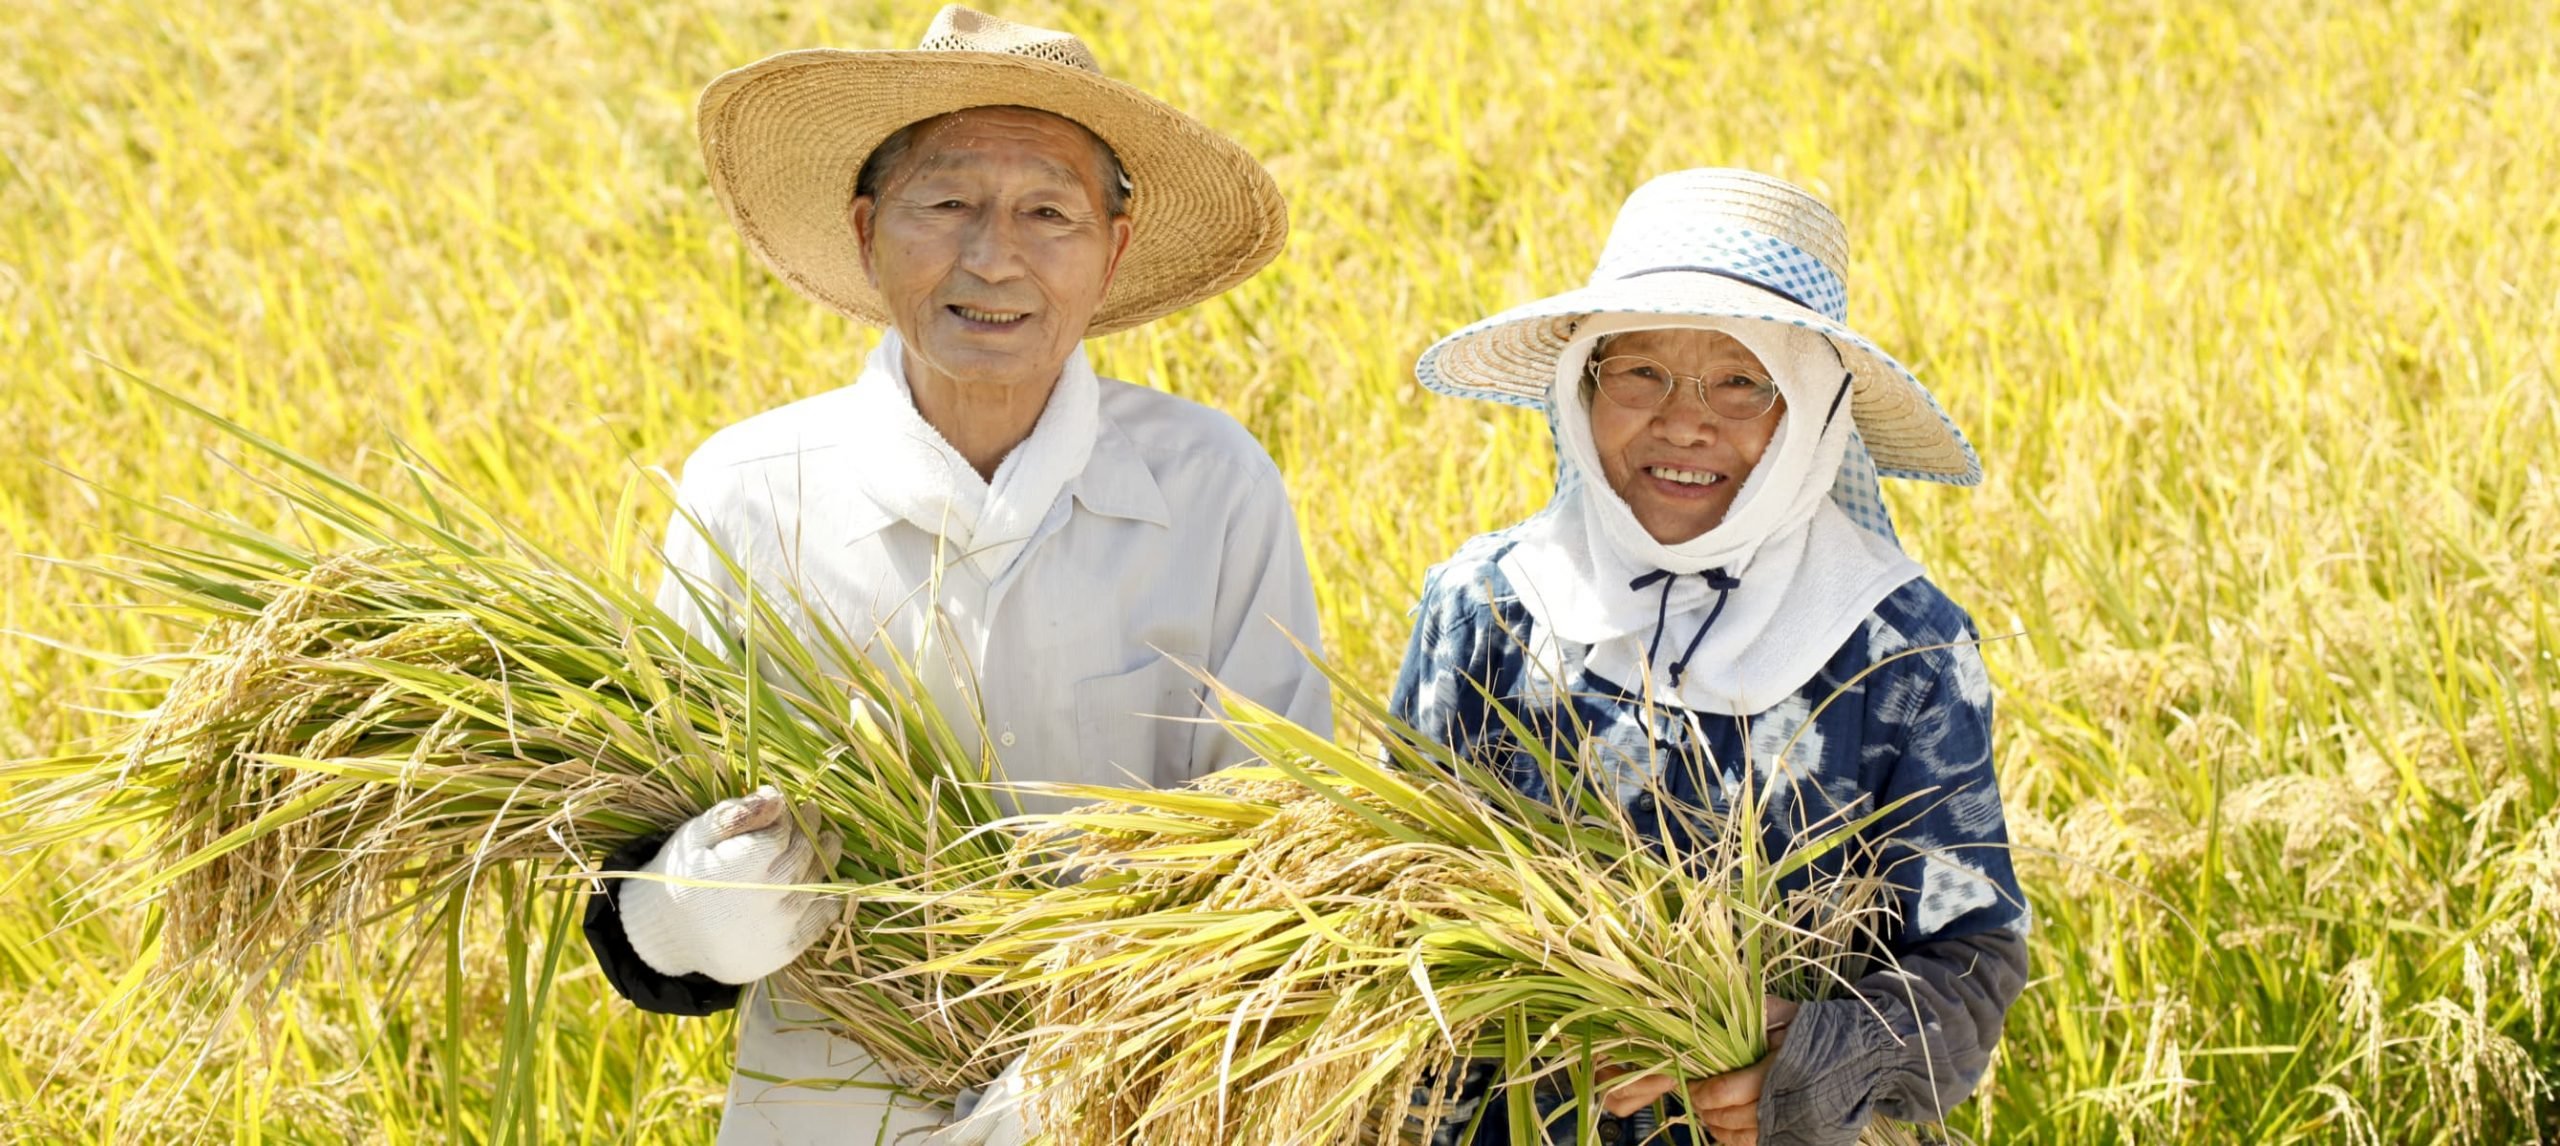 Japan's farmers in the rice fieldJapan's farmers in a rice field